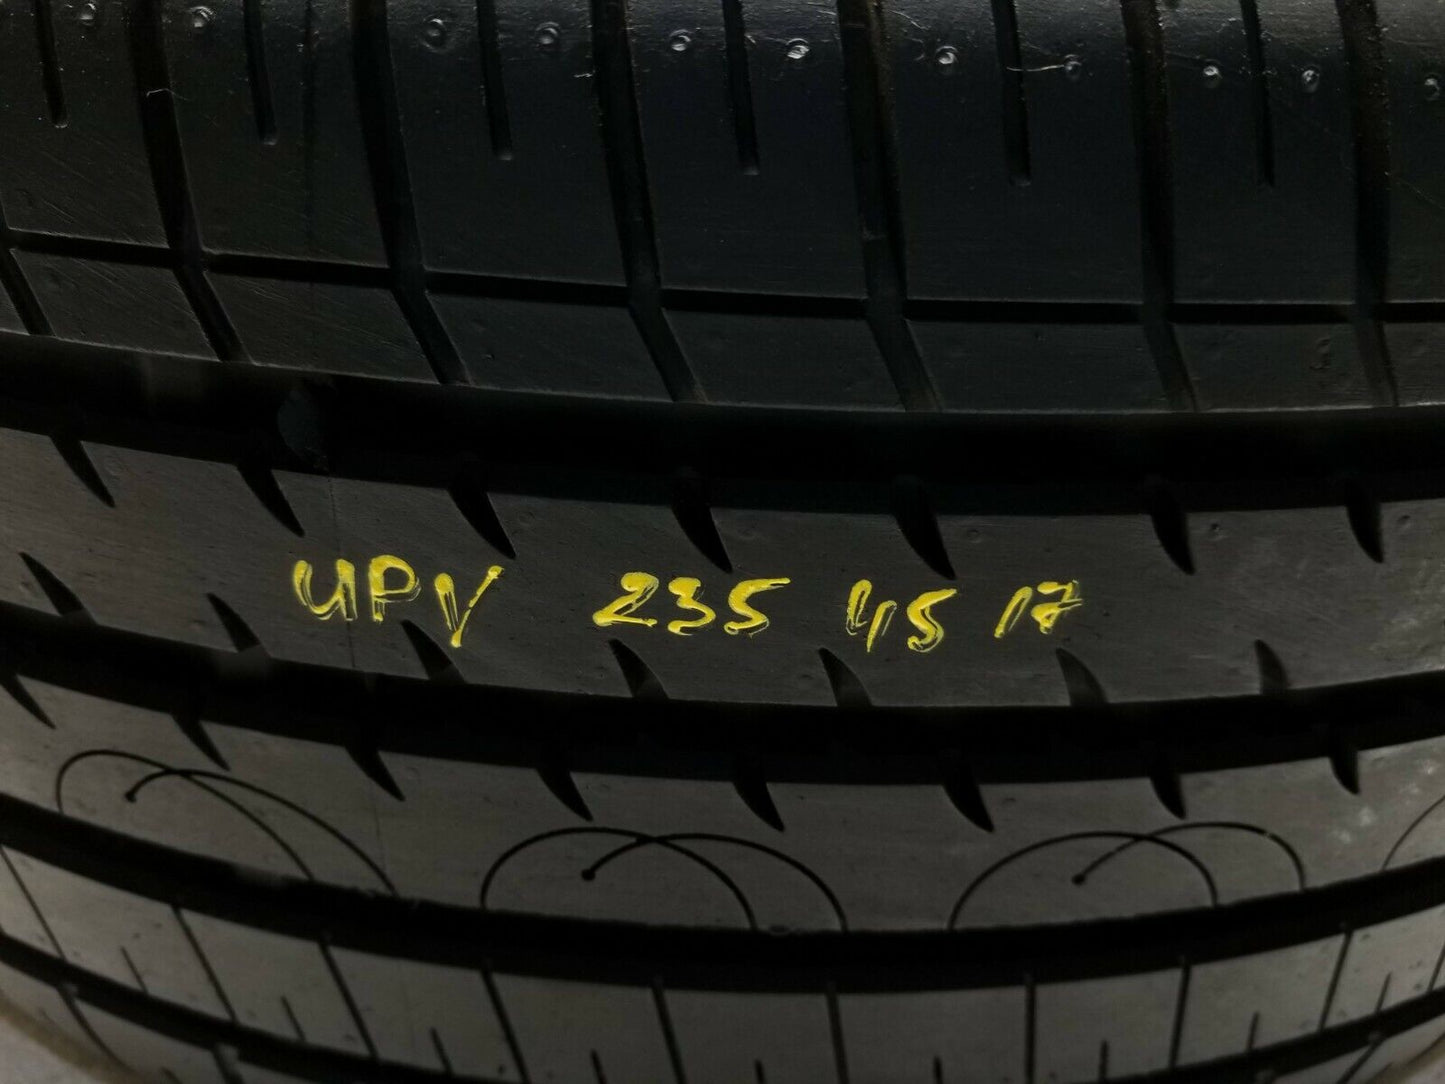 Upv 235/45r17 Tire 9.2/32"